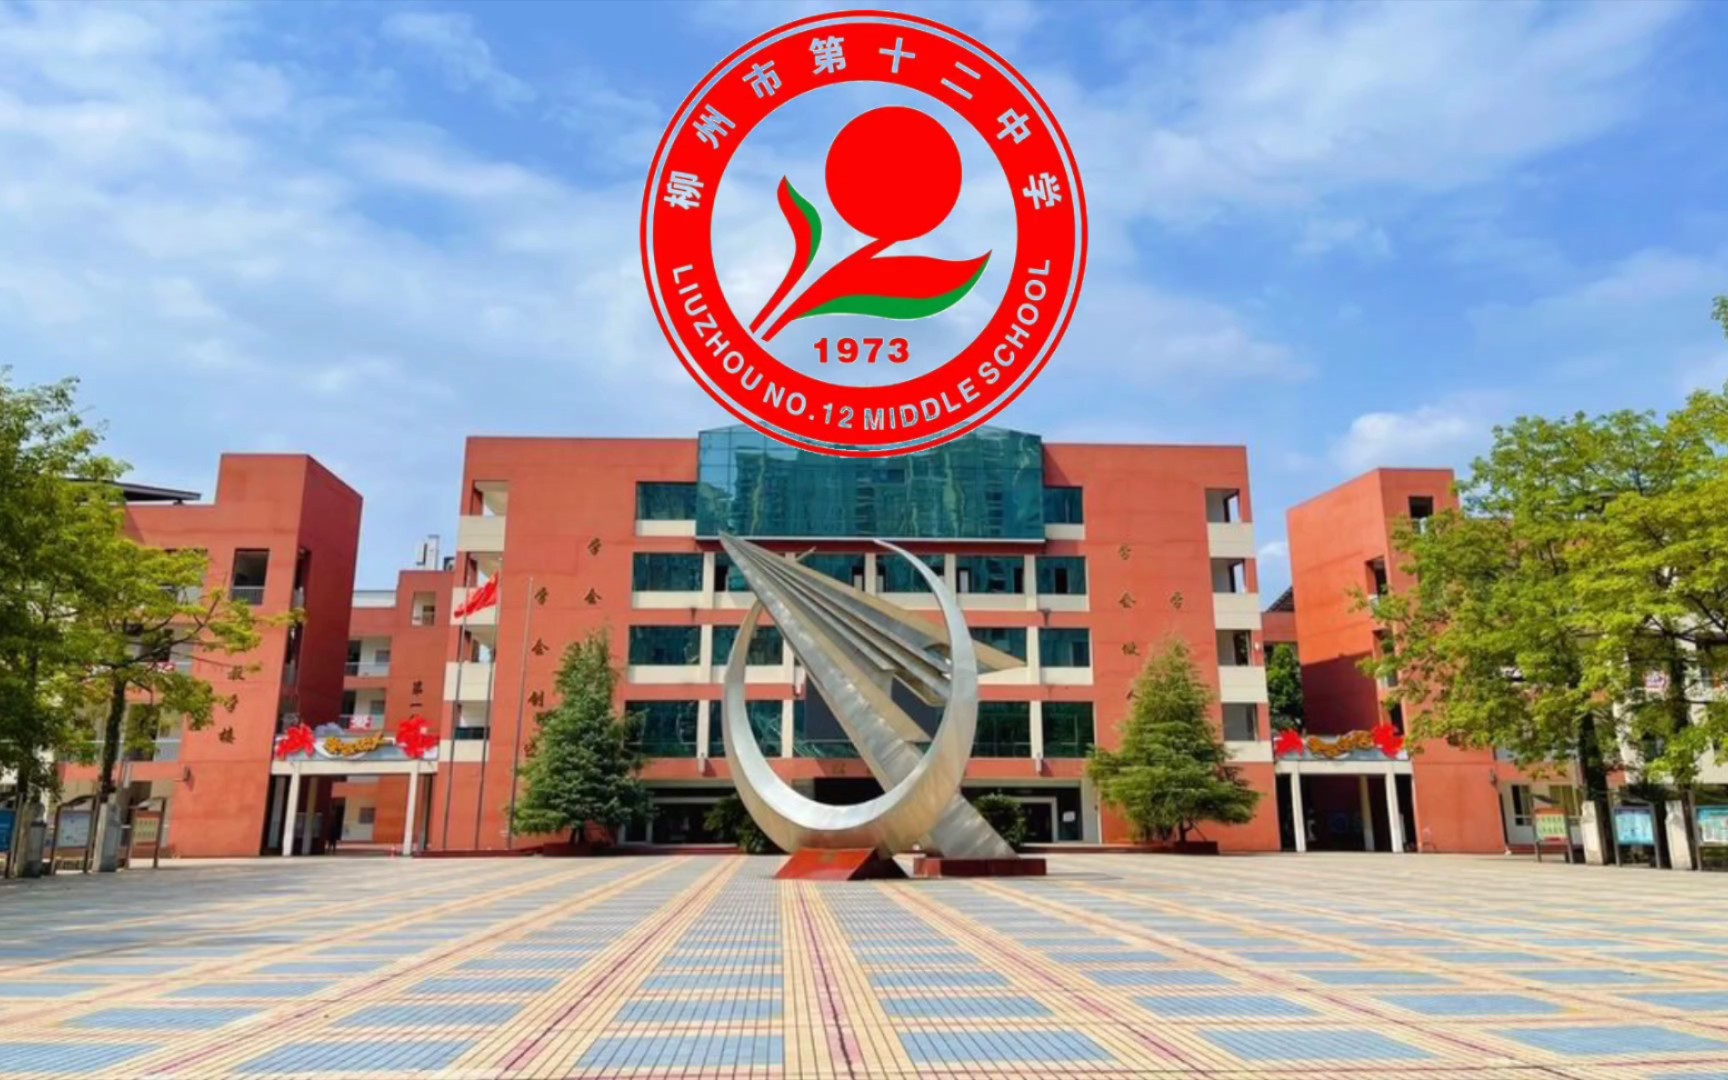 柳州市第十二中学校徽图片